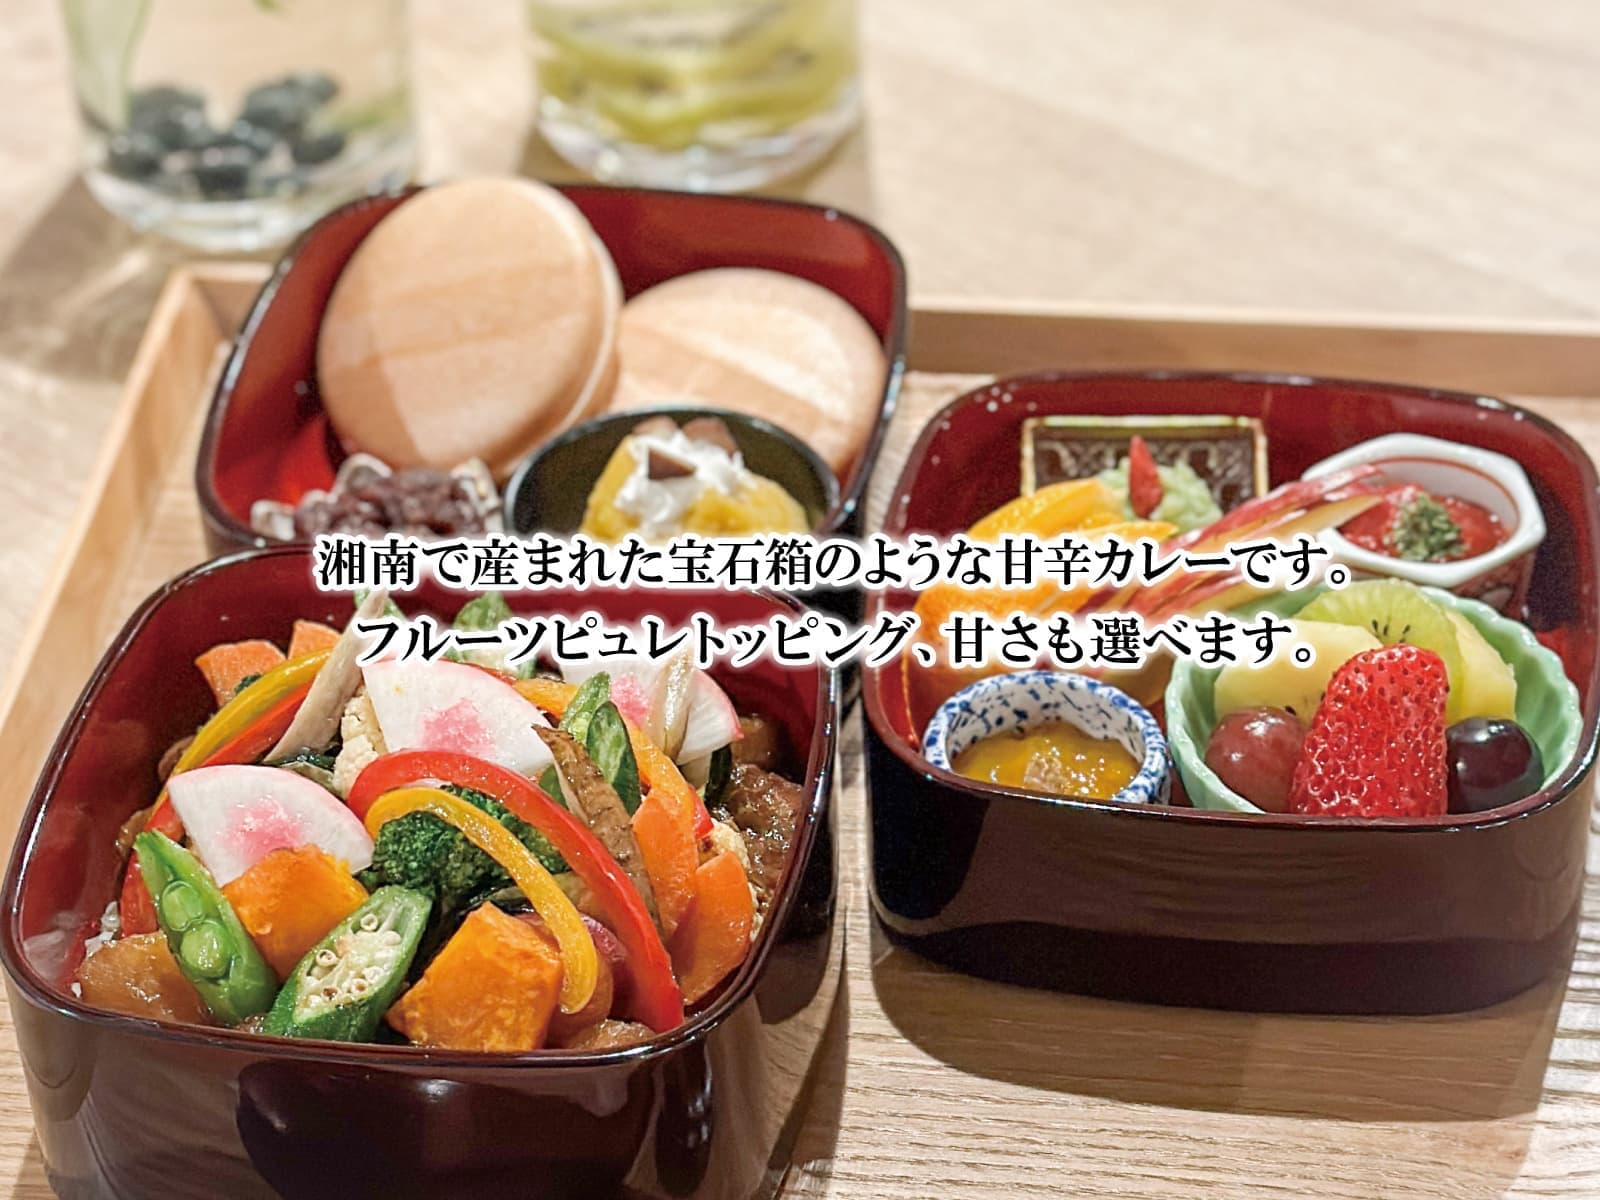 横浜で人気のカレーyukartの森焼き野菜玉手箱